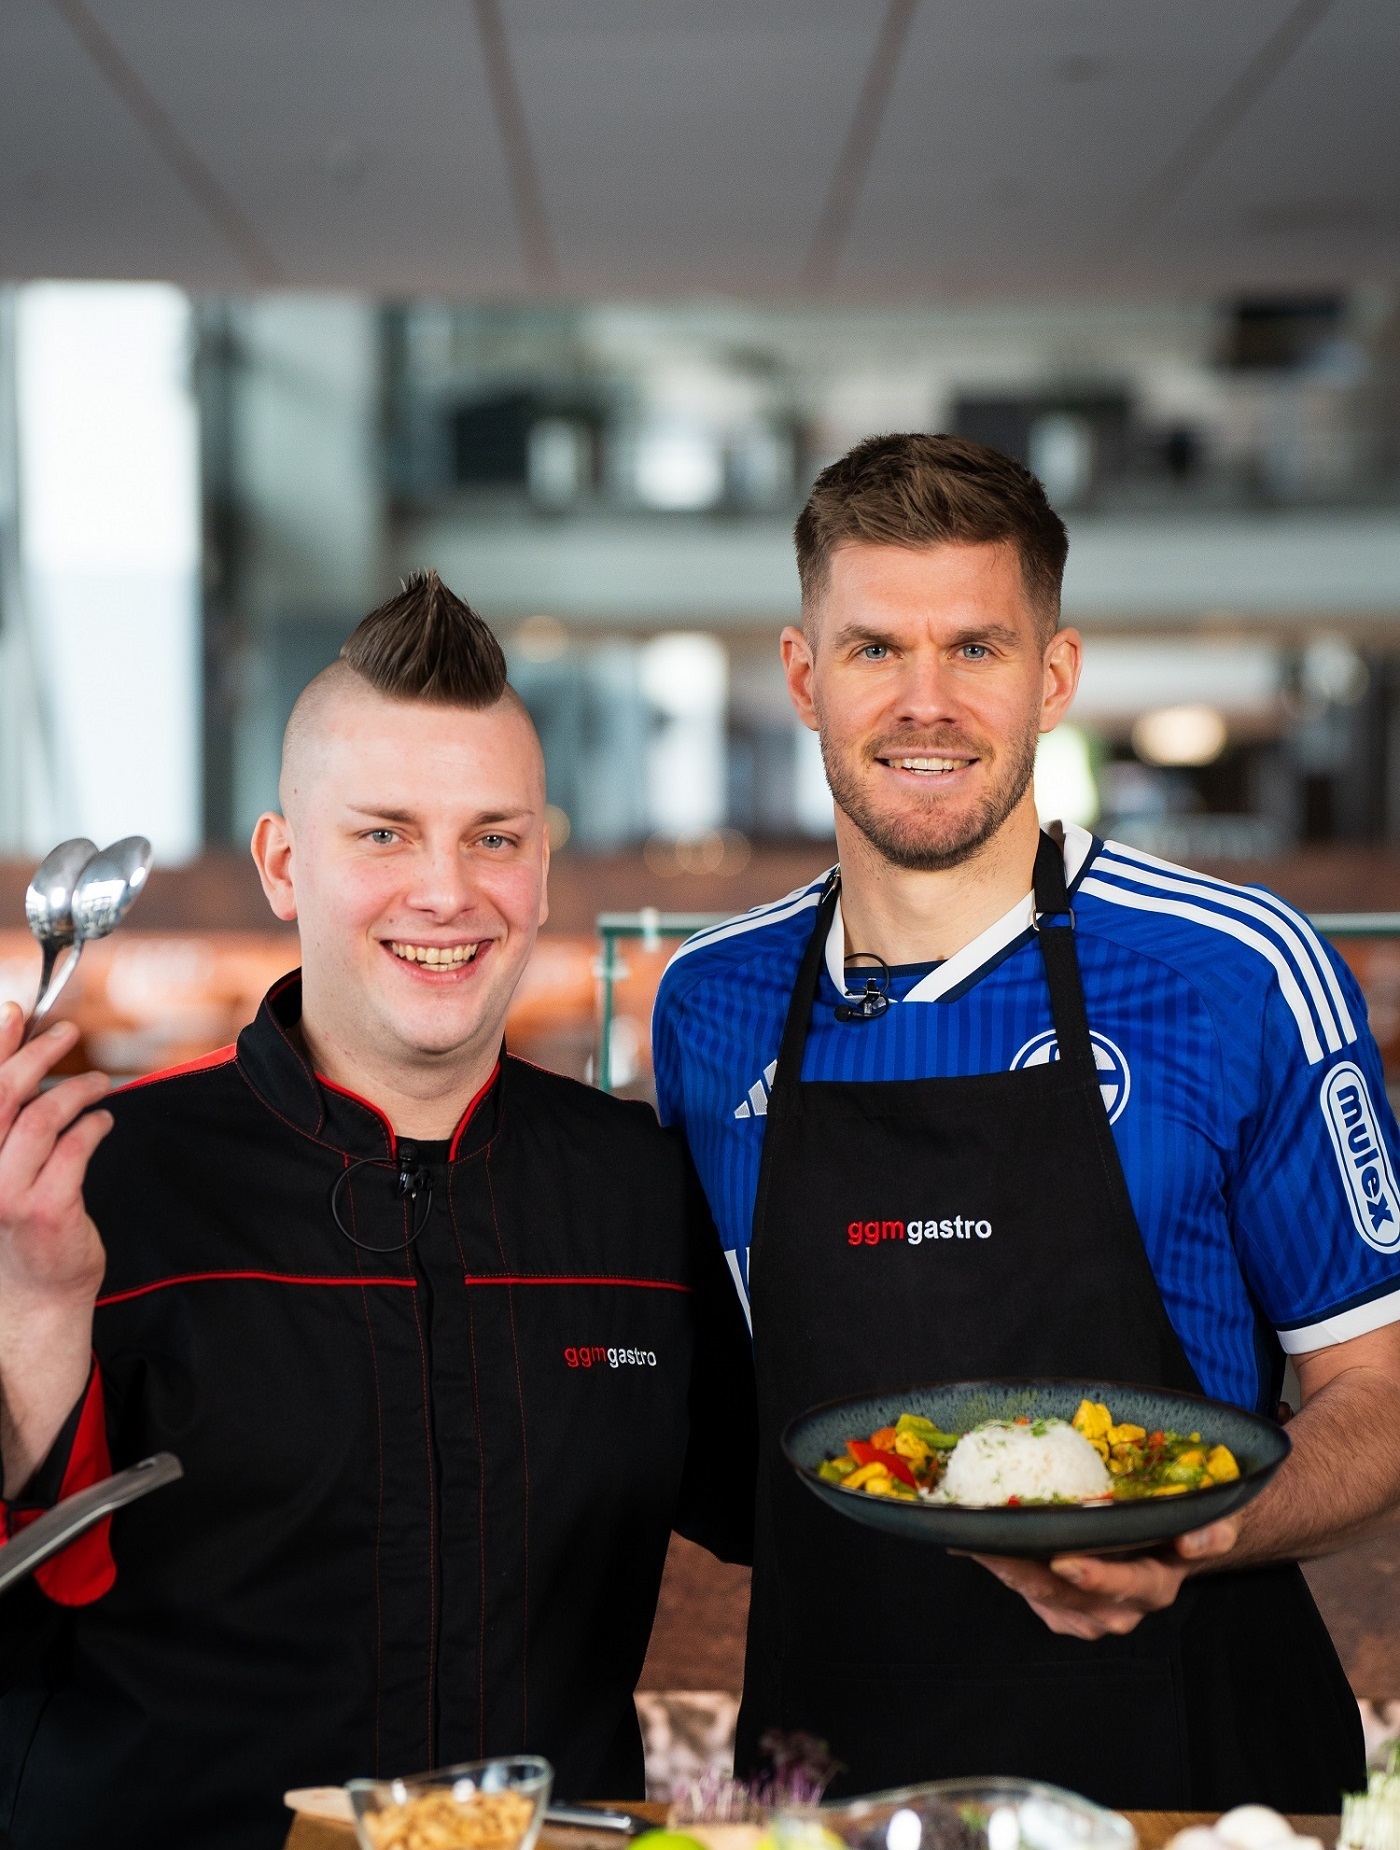 Schalke 04-Stümer Simon Terodde und GGM Gastro-Koch Harry stehen in der Küche. Simon Terodde hält einen Teller Hähnchencurry mit Reis in der Hand, den die beiden nach seinem Rezept zubereitet haben.